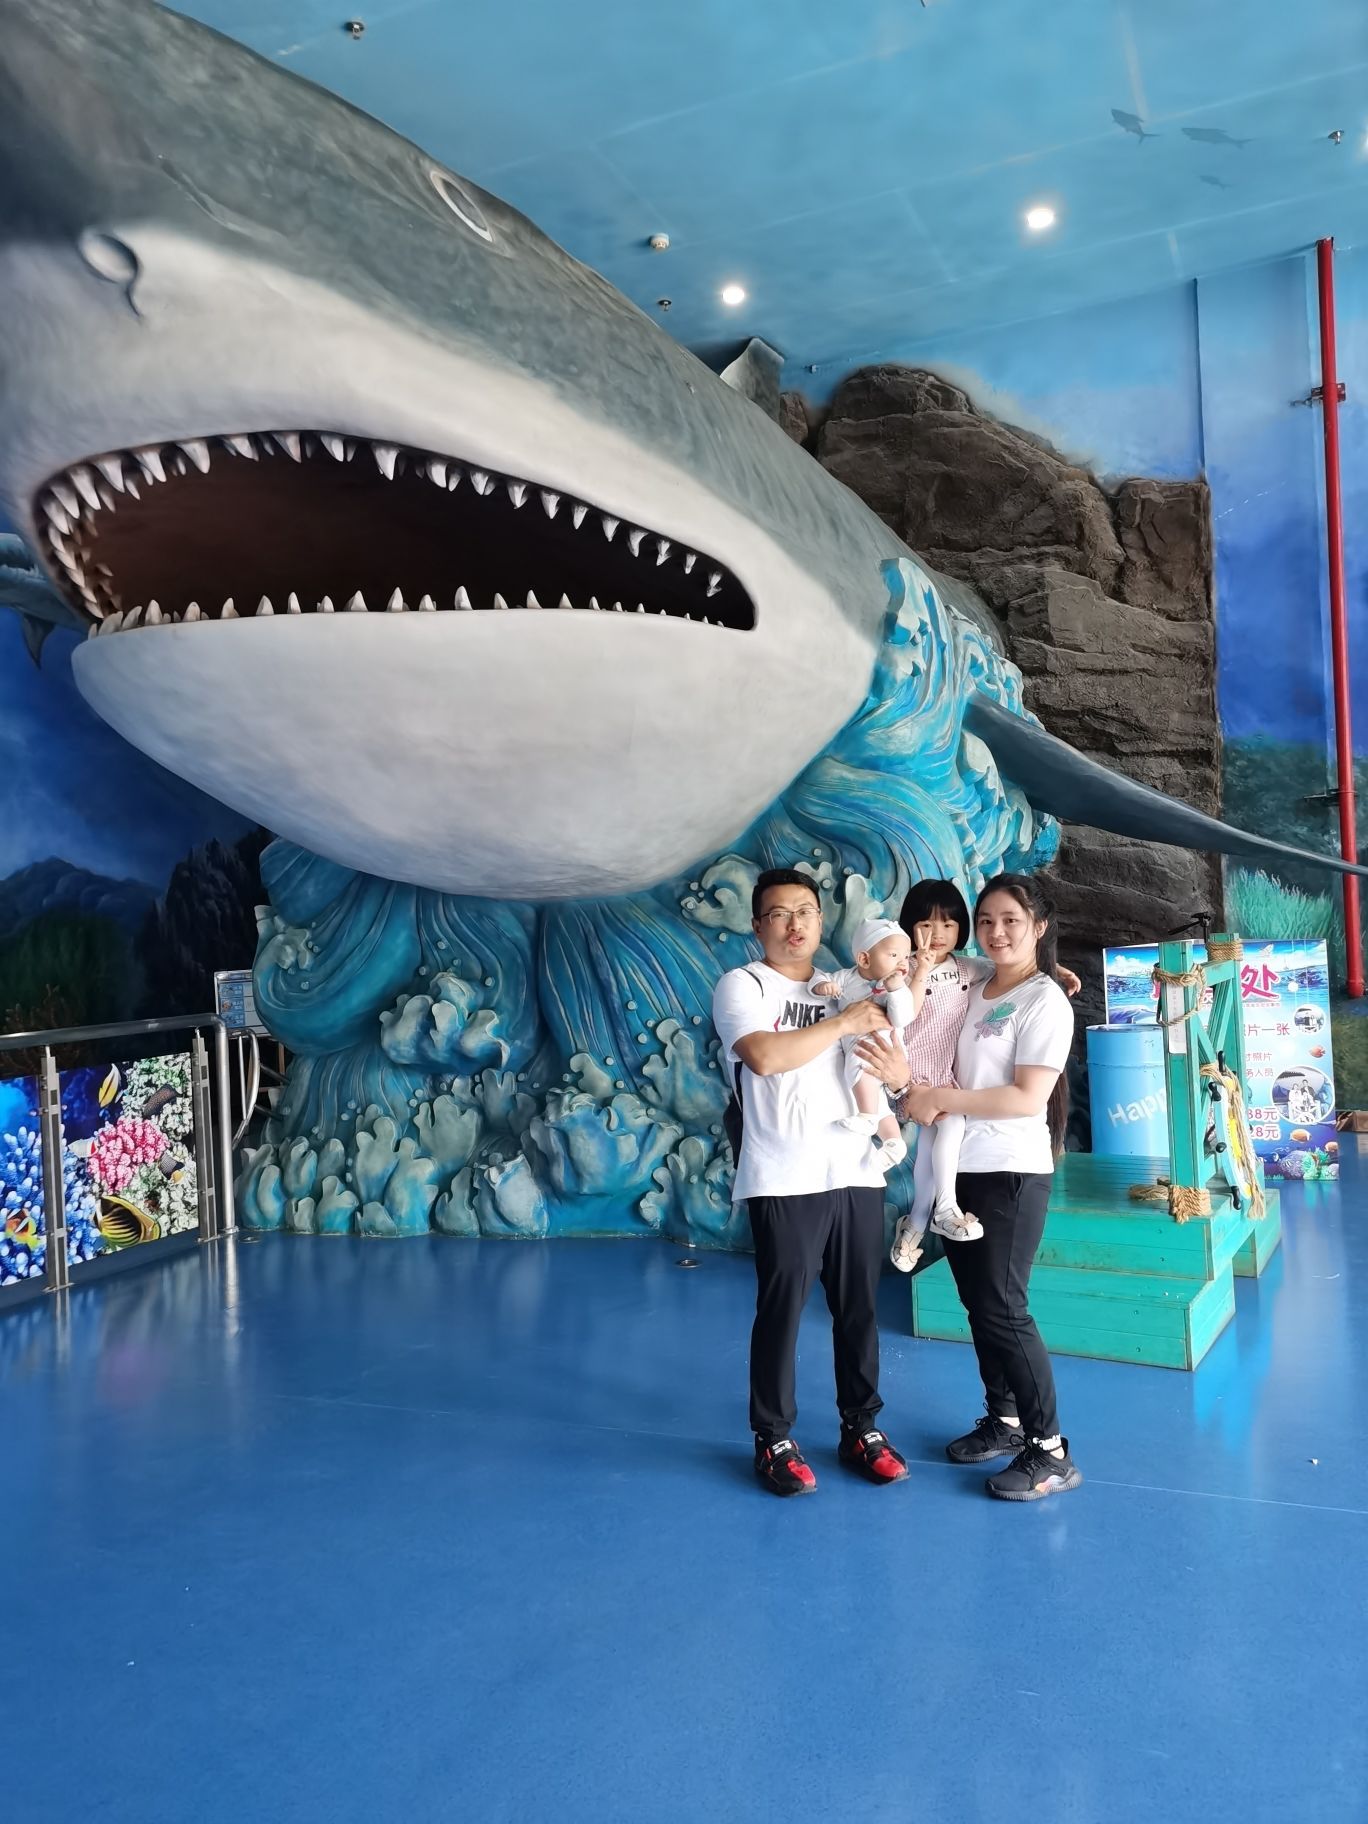 2022上海海昌海洋公园游玩攻略,赶紧拉着朋友来一组超级有感...【去哪儿攻略】